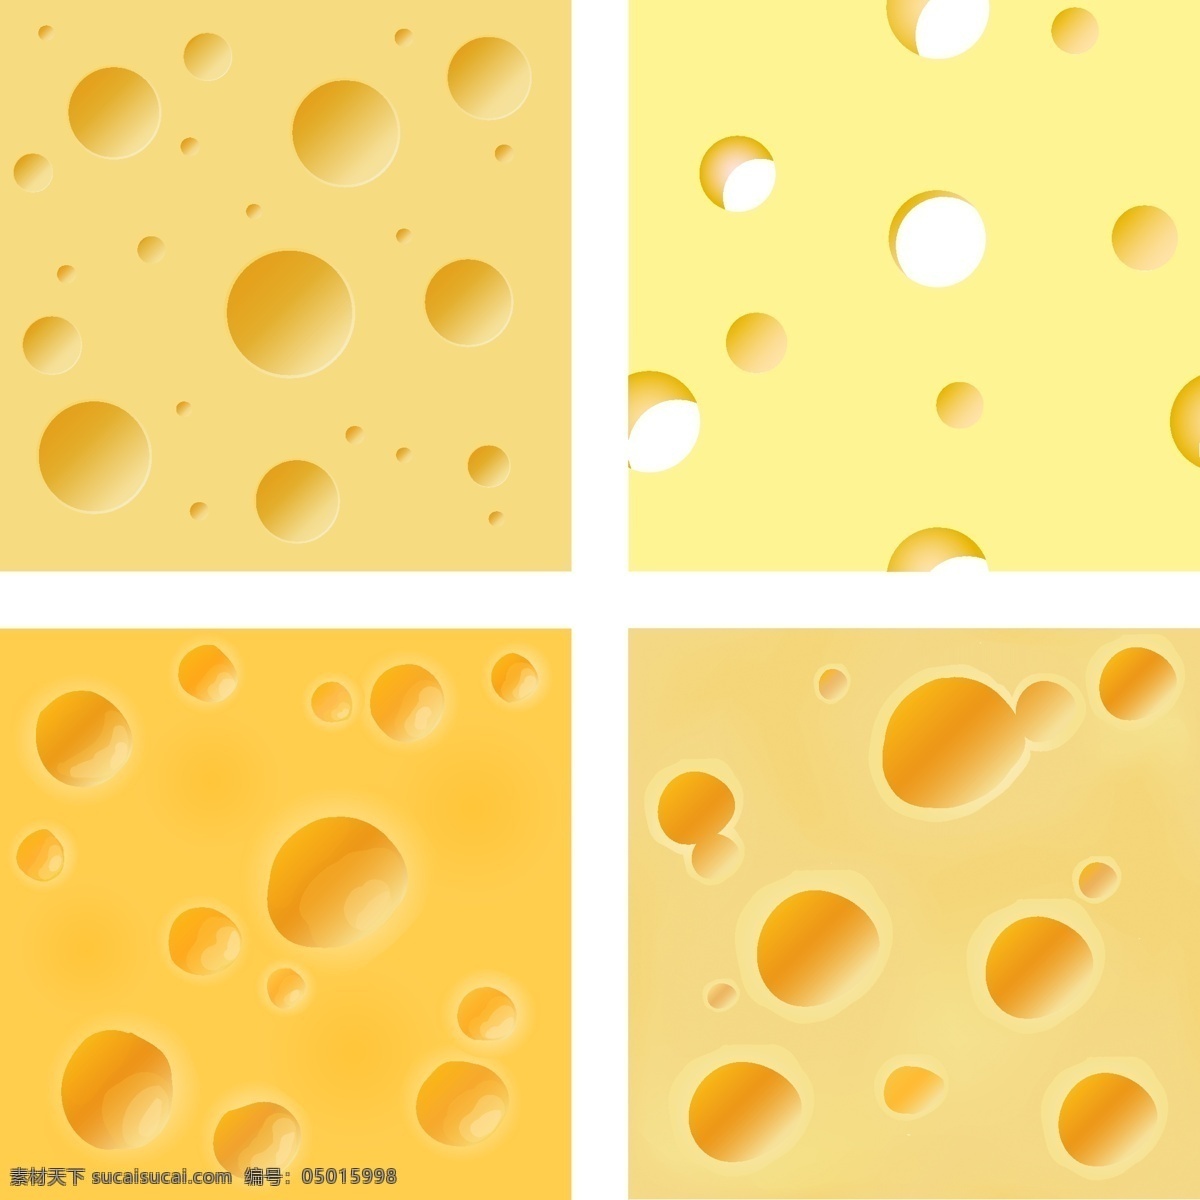 黄色奶酪背景 干酪 奶酪 食材 奶酪主题 餐饮美食 生活百科 矢量素材 黄色